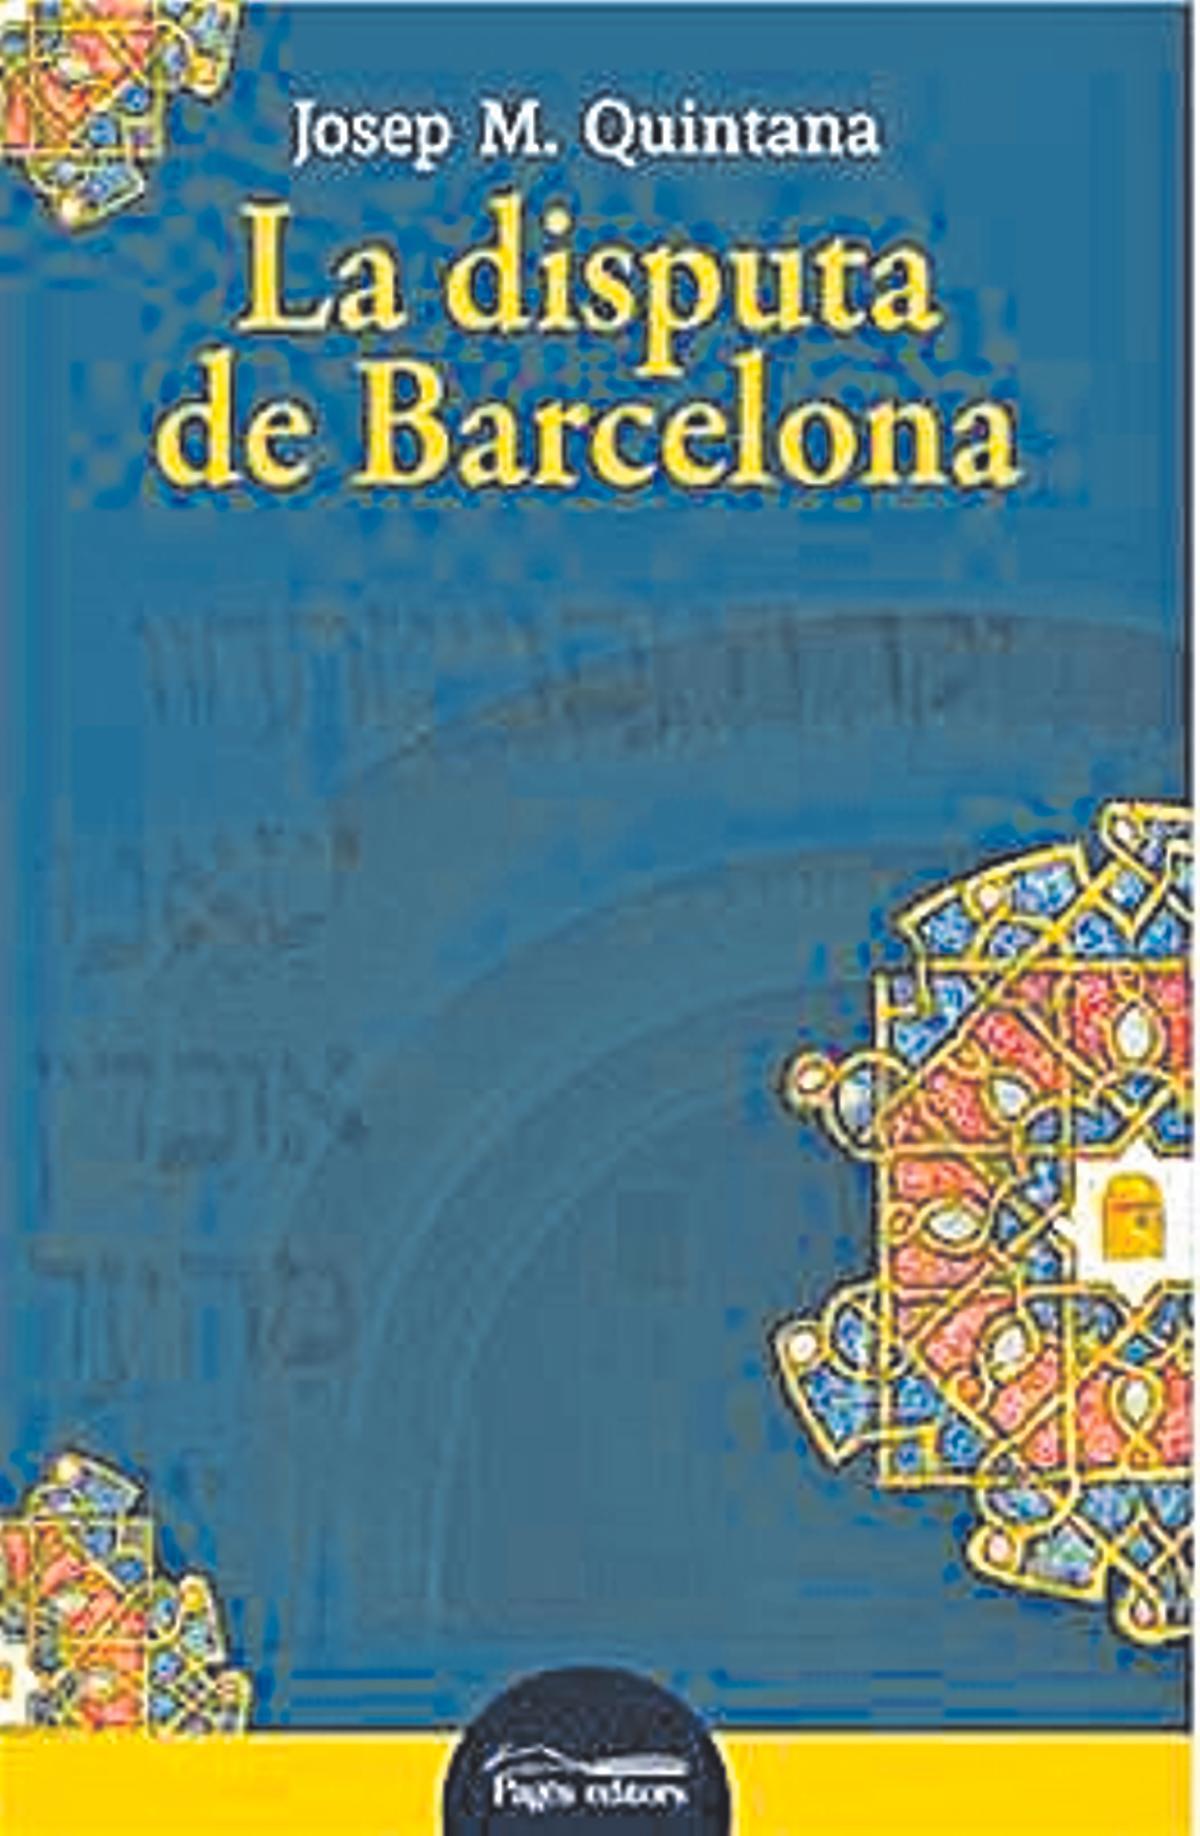 La disputa de Barcelona, de Josep Maria Quintana. Editorial Pagès. 231 pàgines 19,50 euros